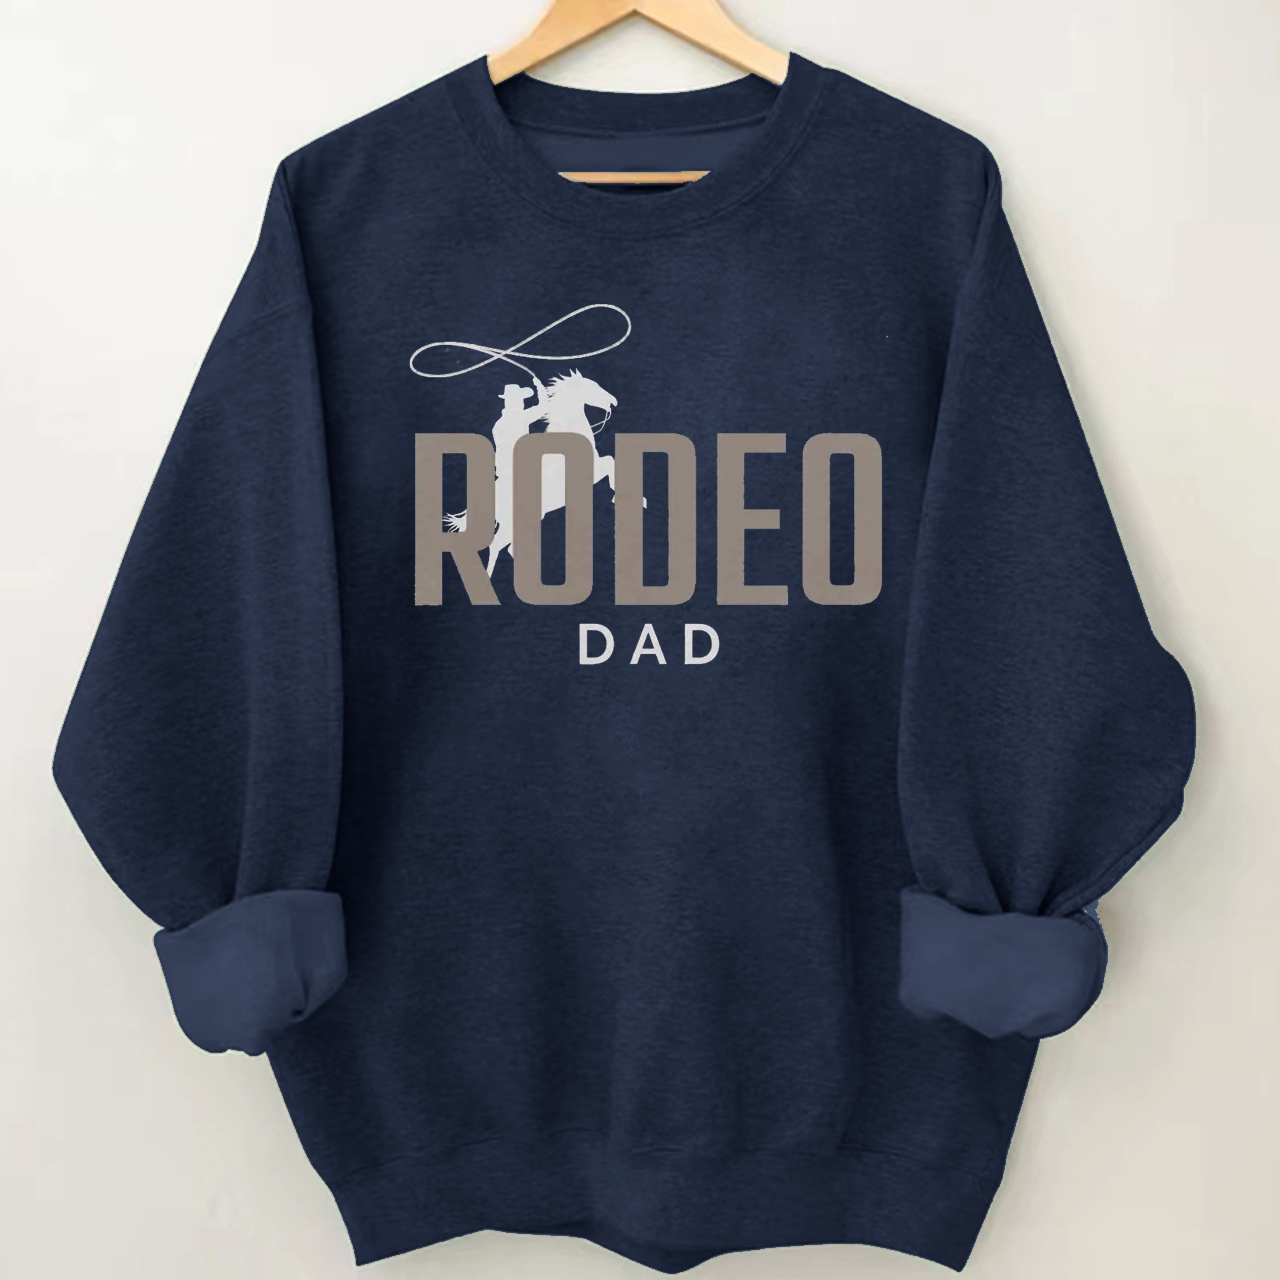 Cowboy New Dad Rodeo Crewneck Sweatshirt